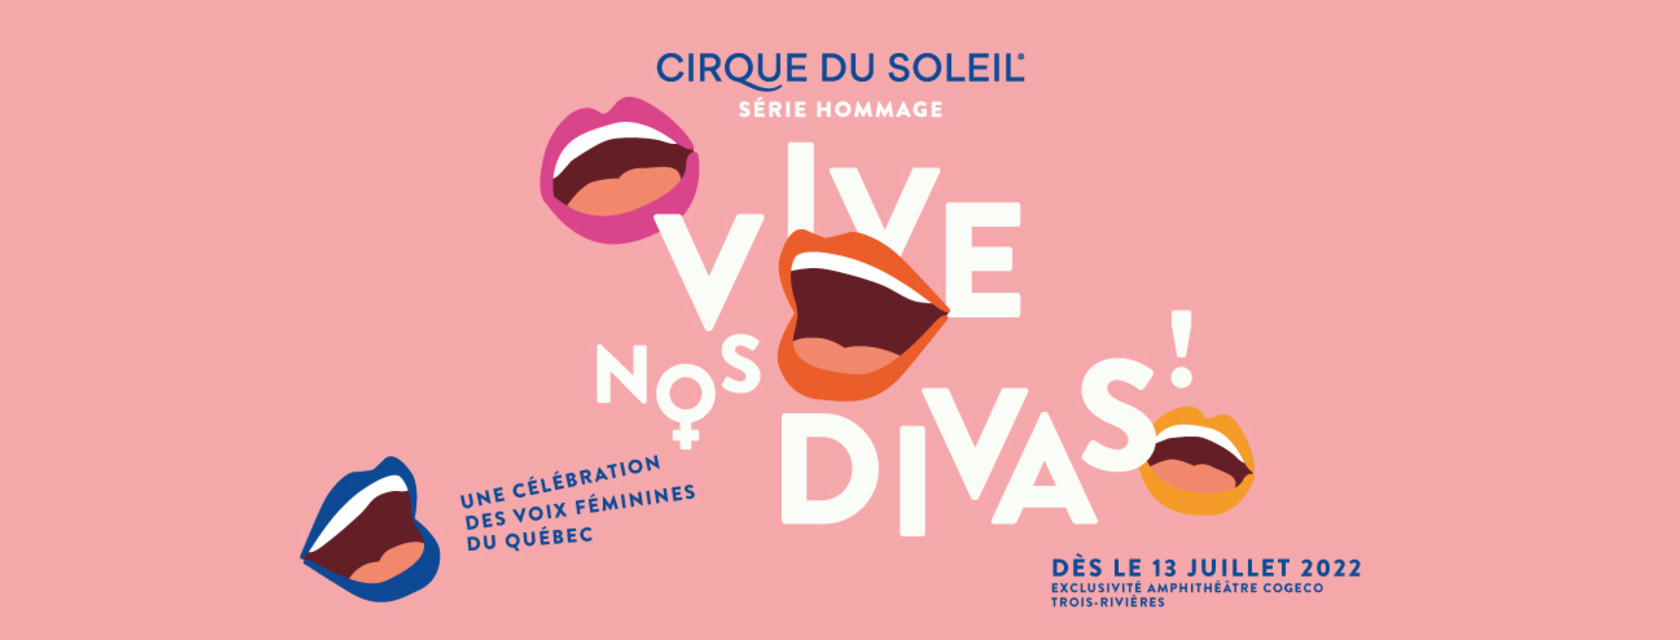 Cirque du Soleil - Hommage aux divas québécoises - Report du spectacle à la saison 2022